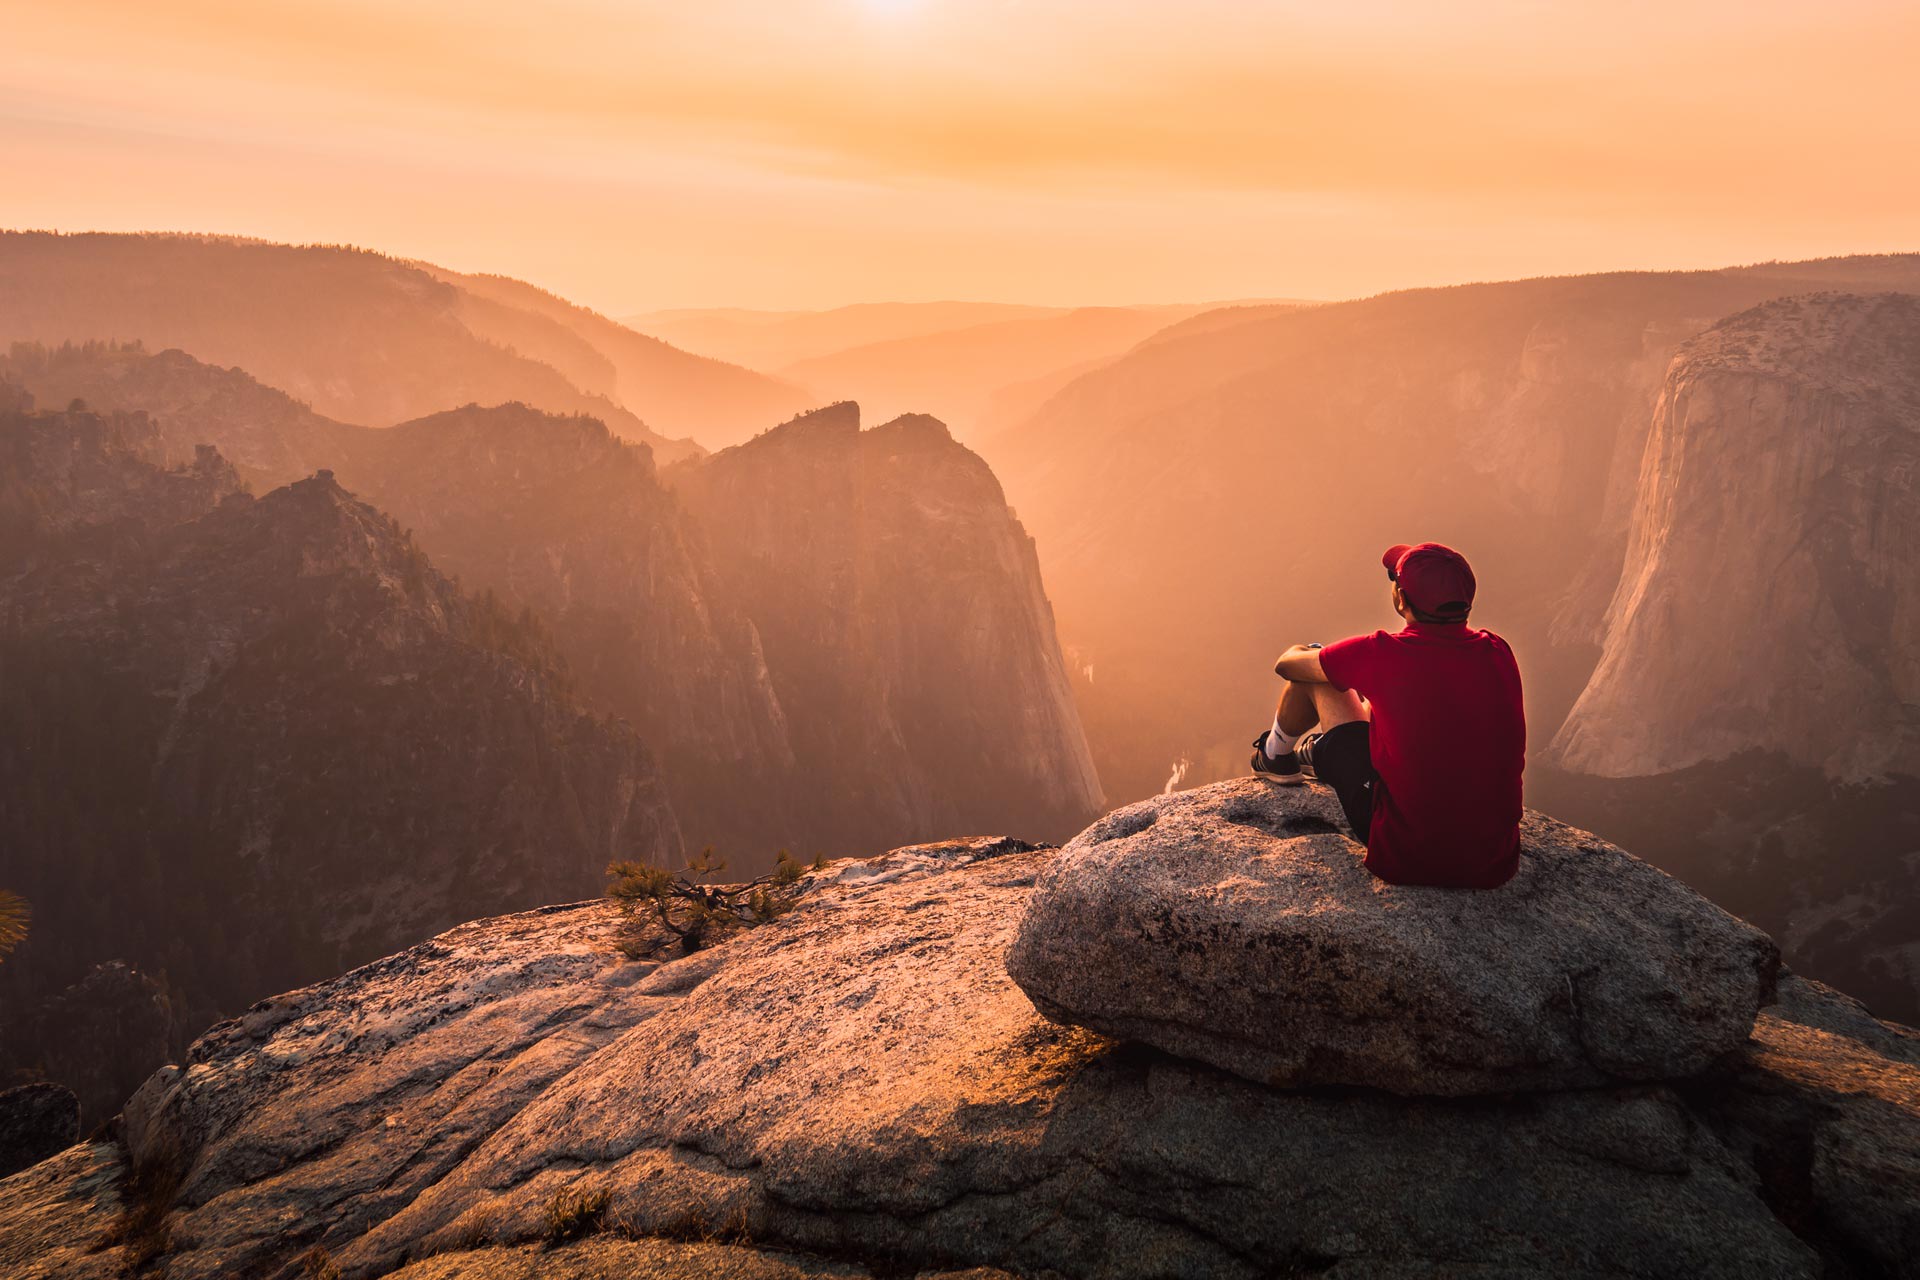 Un homme avec une casquette rouge est assis sur un promontoire rocheux et regarde le coucher de soleil.